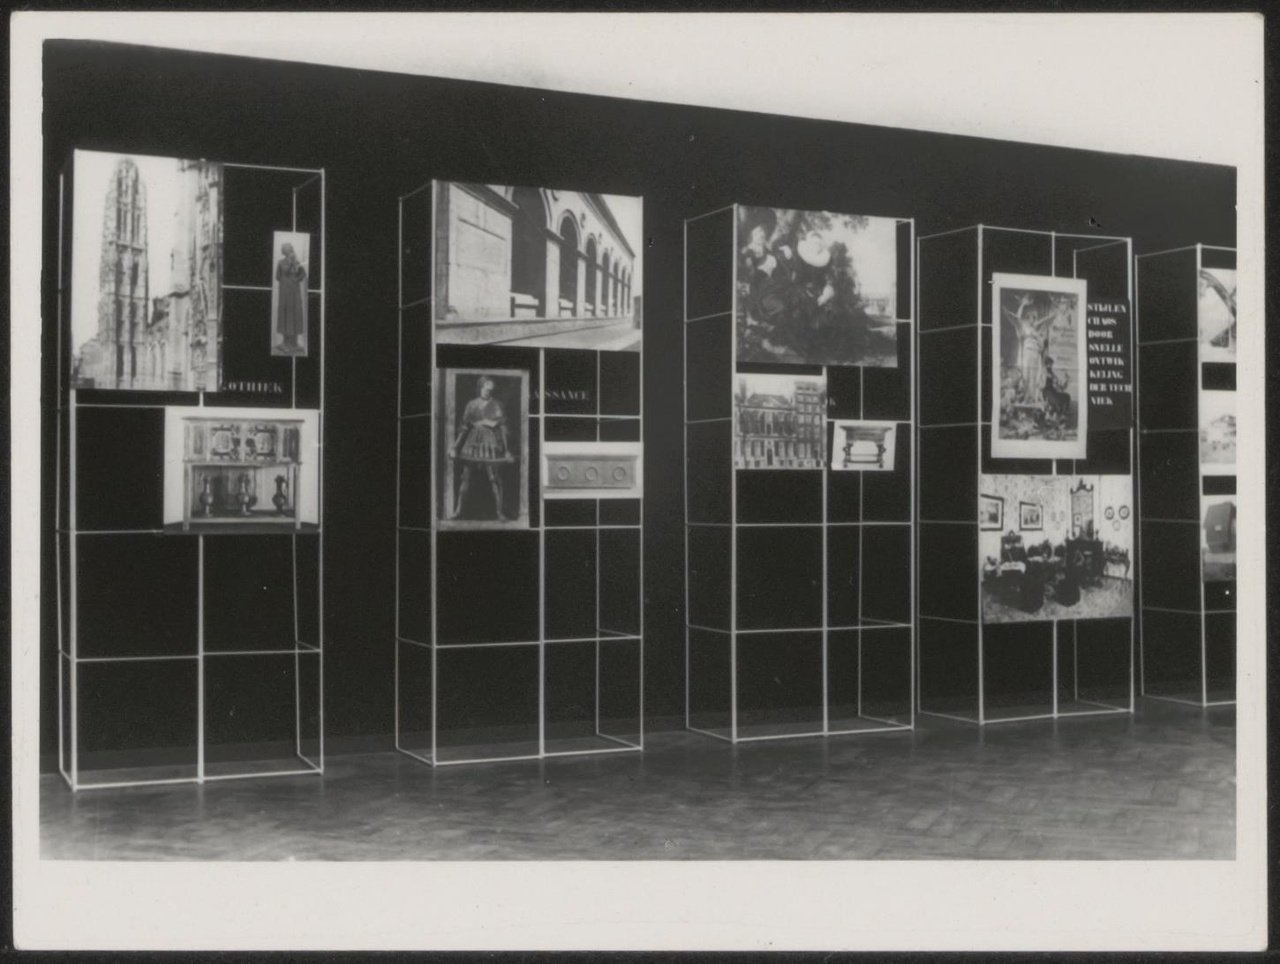 Afbeelding van tentoonstelling De Stijl SMA, 1951, zaal 1, zwarte wand met geschiedenis foto's